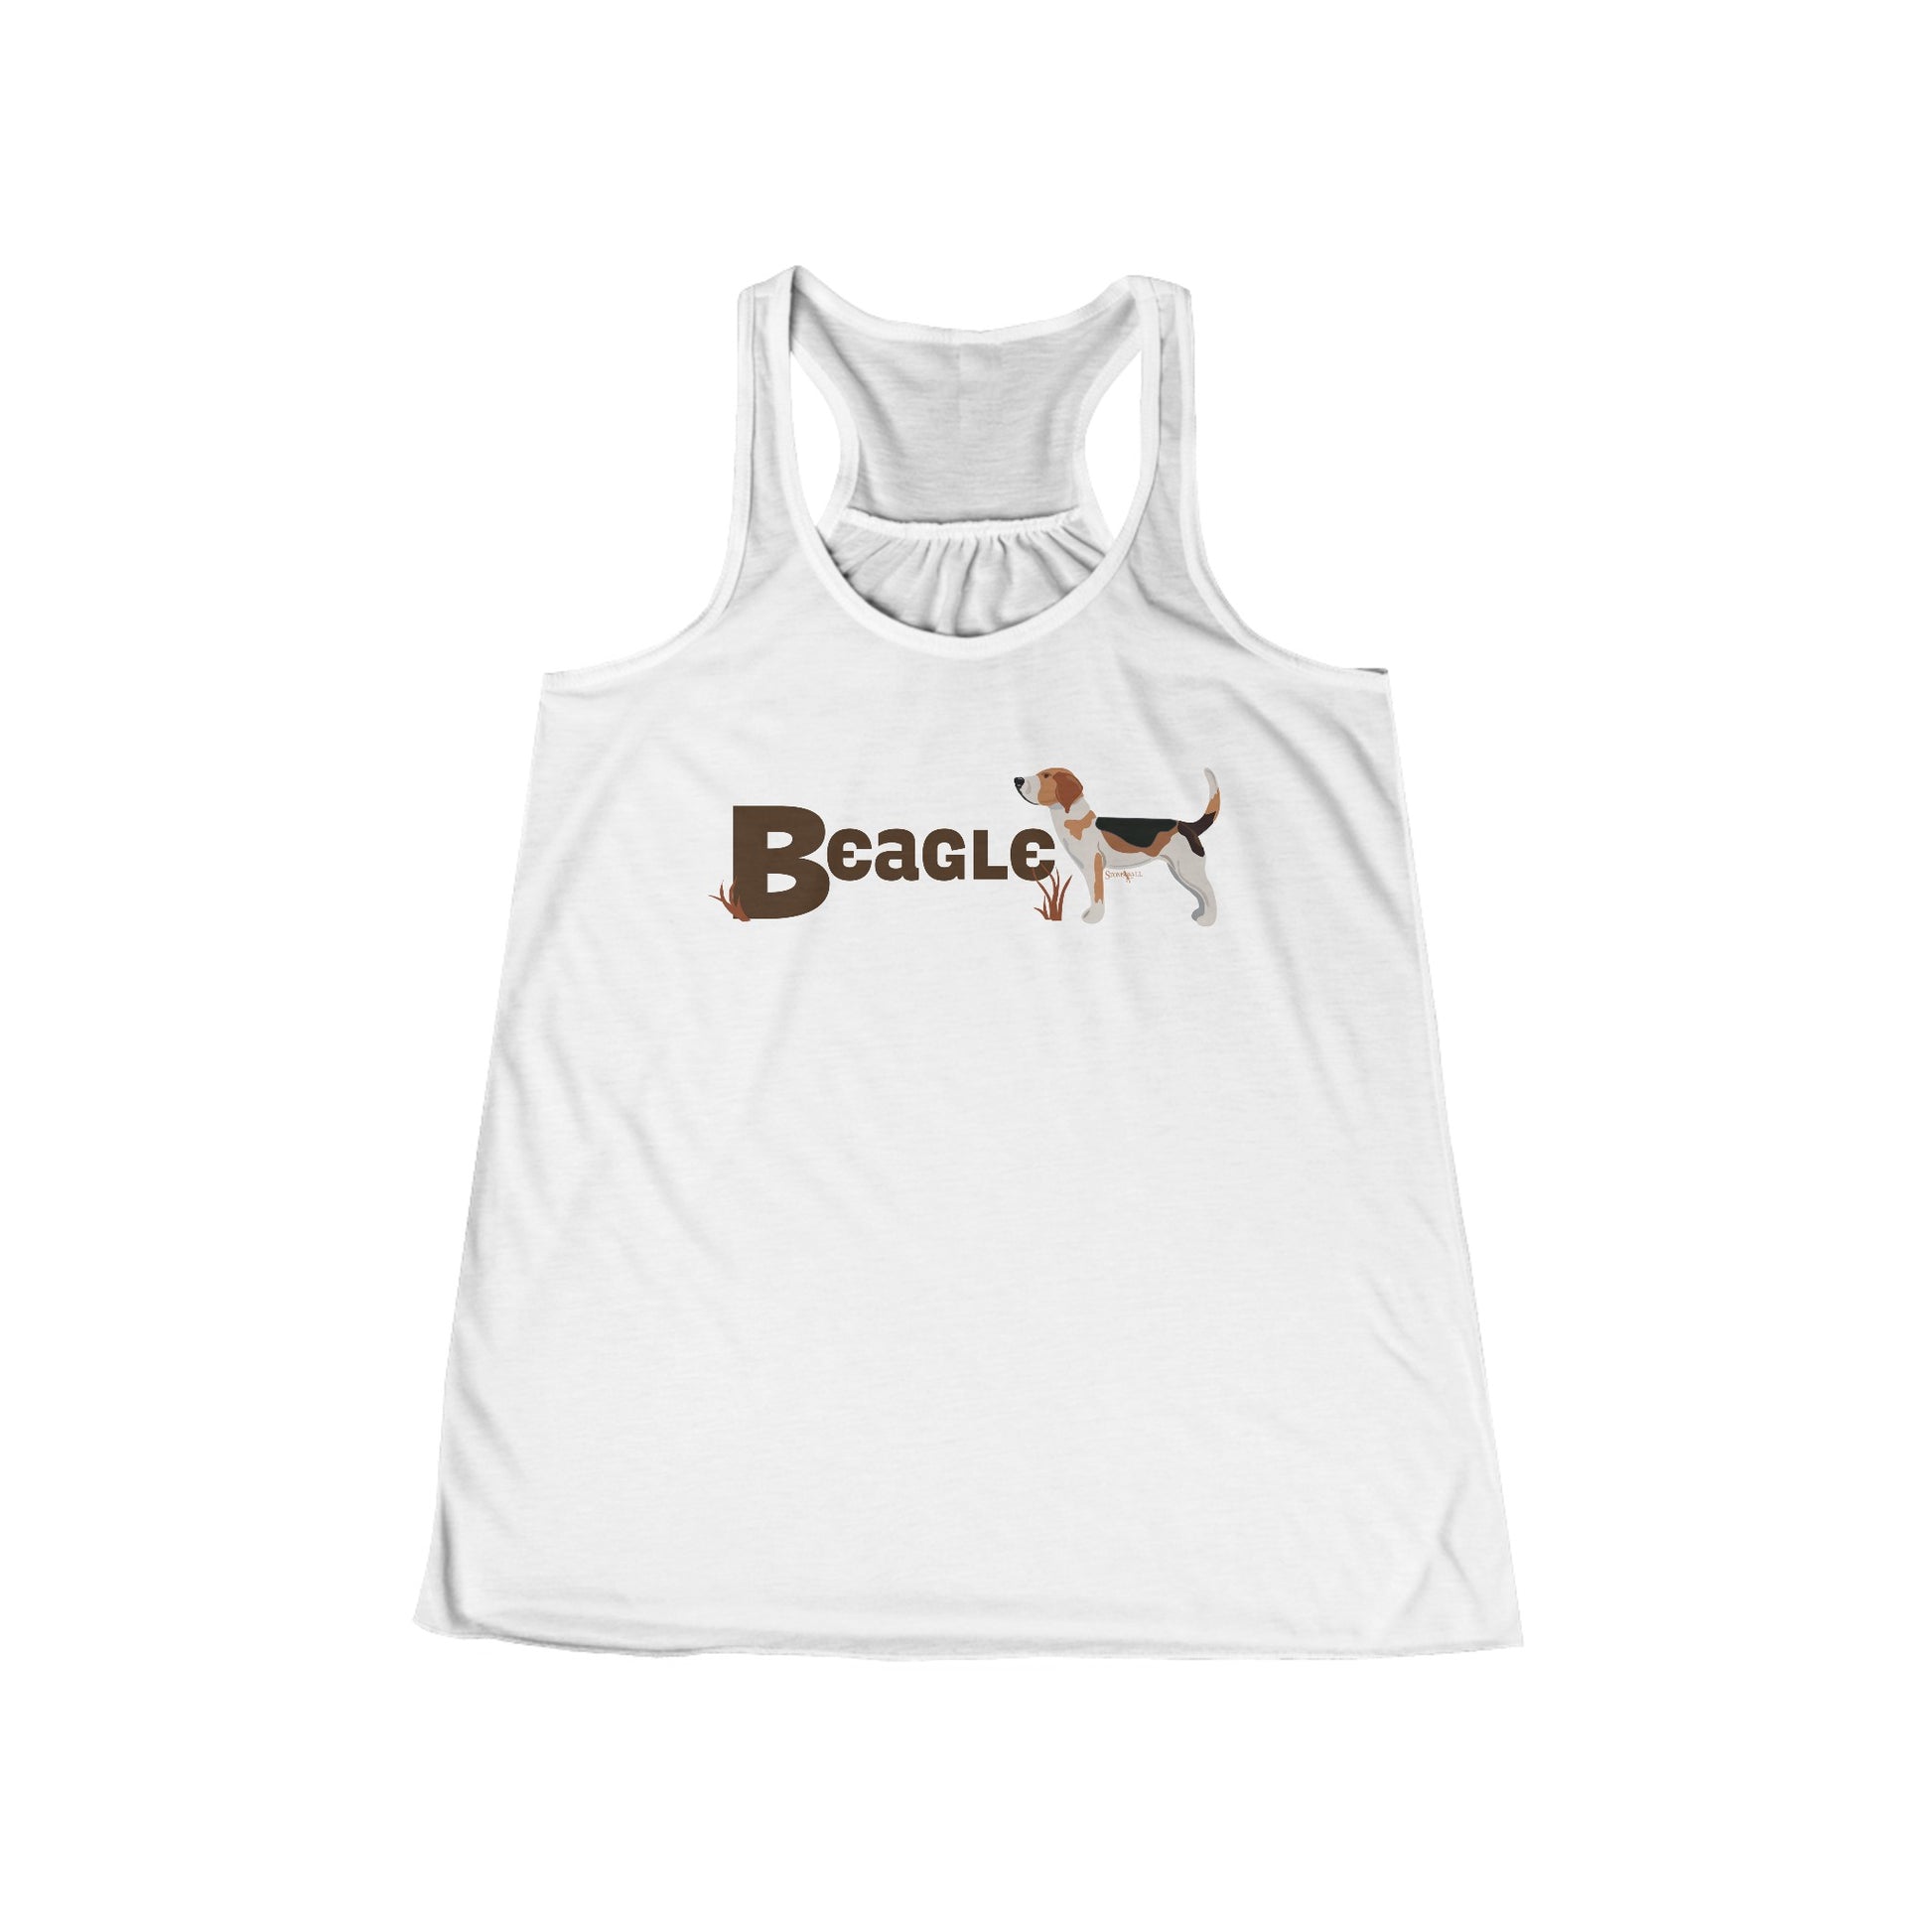 Beagle tank top